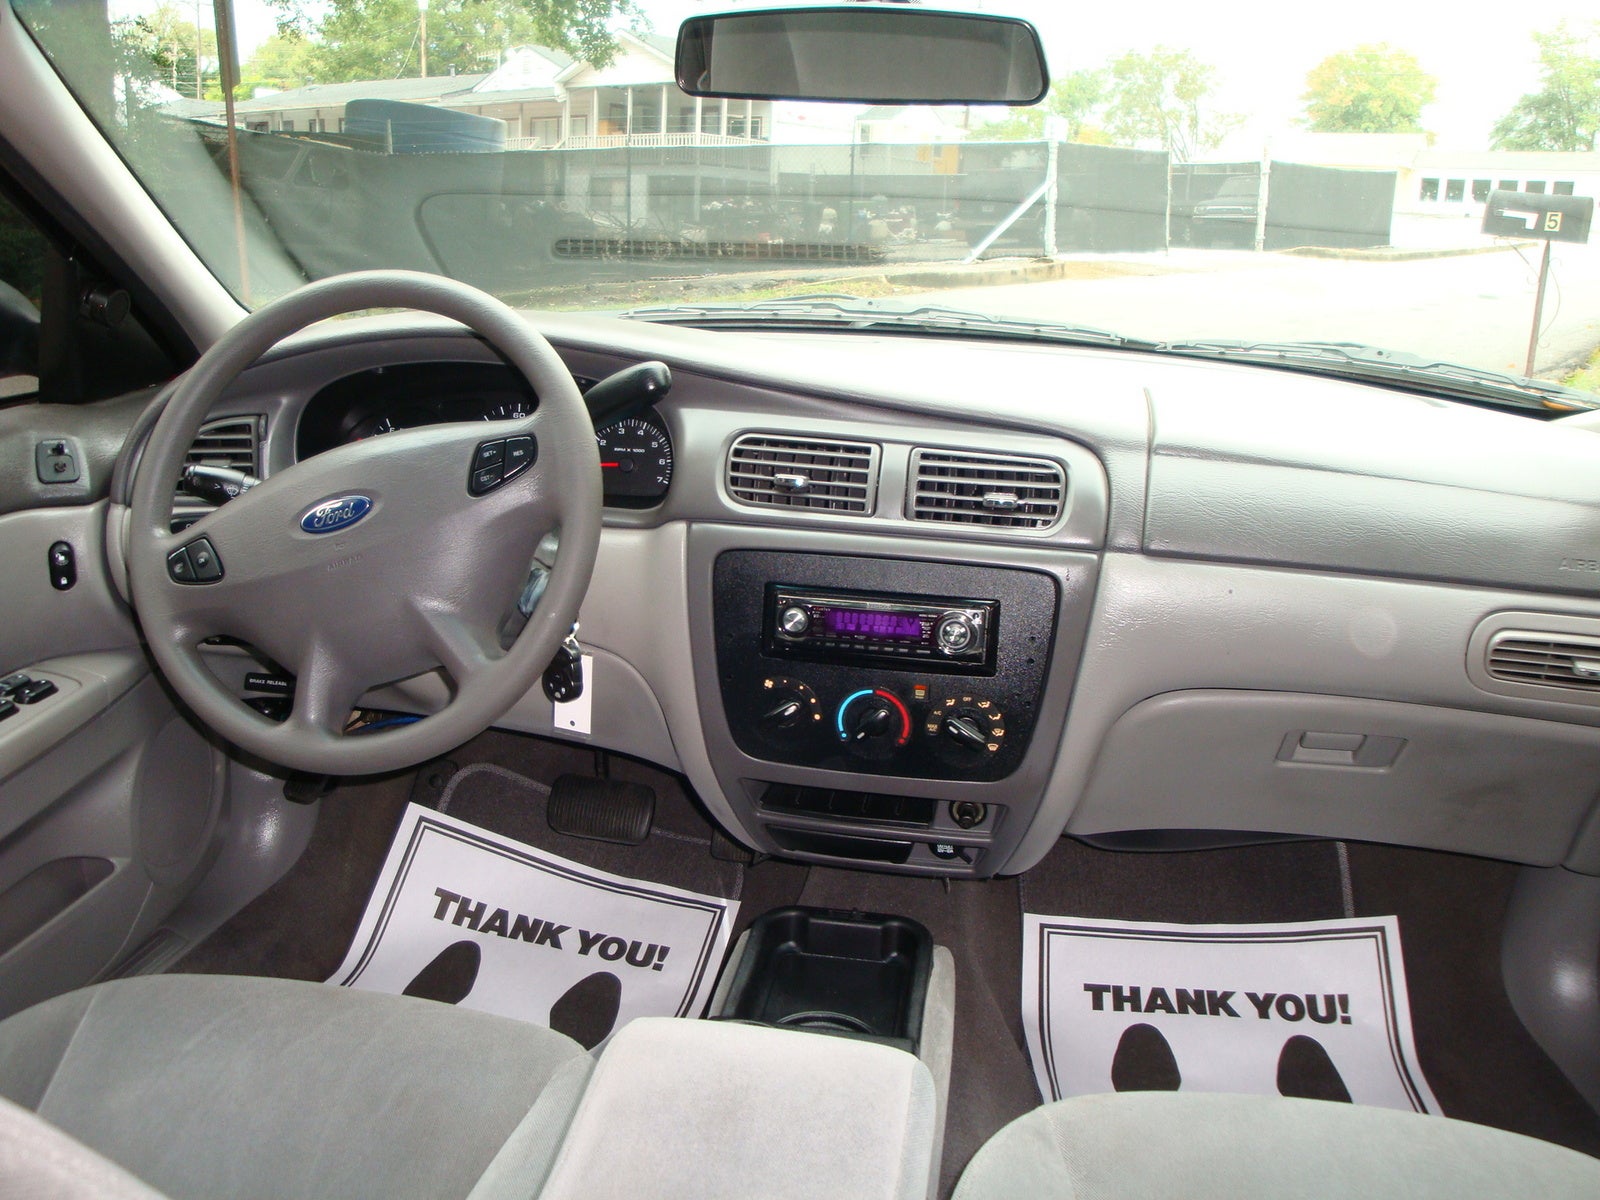 2003 Ford Taurus Interior